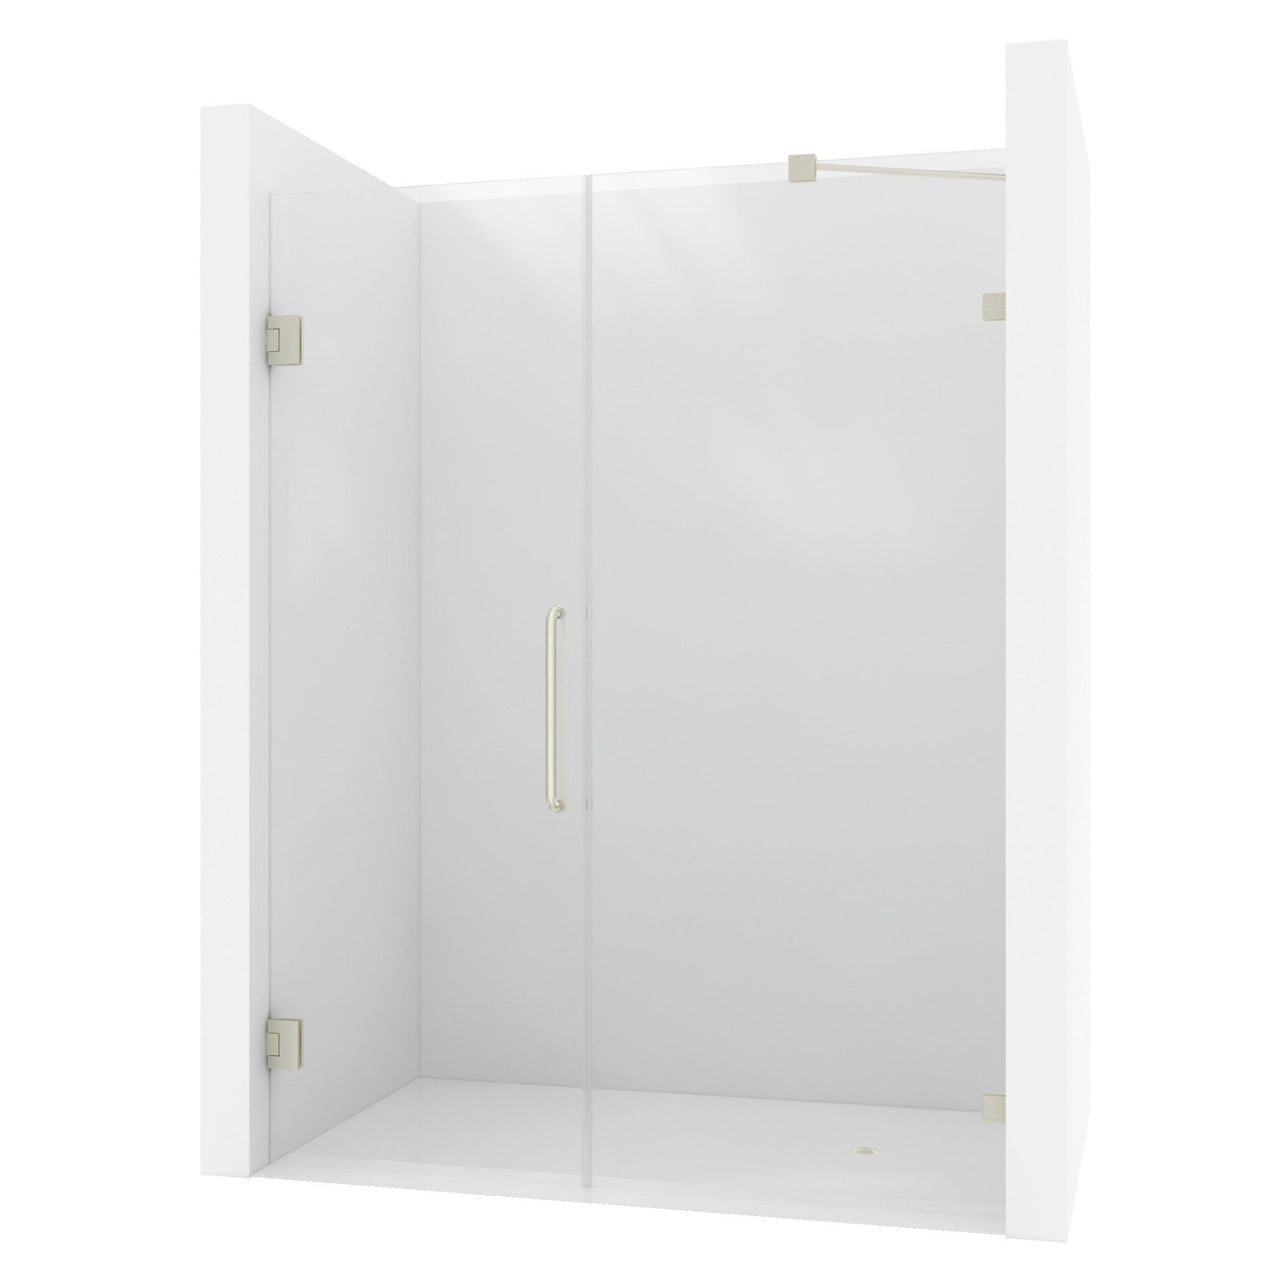 ANZZI Consort Series SD-AZ07-01BN Shower Doors Shower Doors ANZZI 